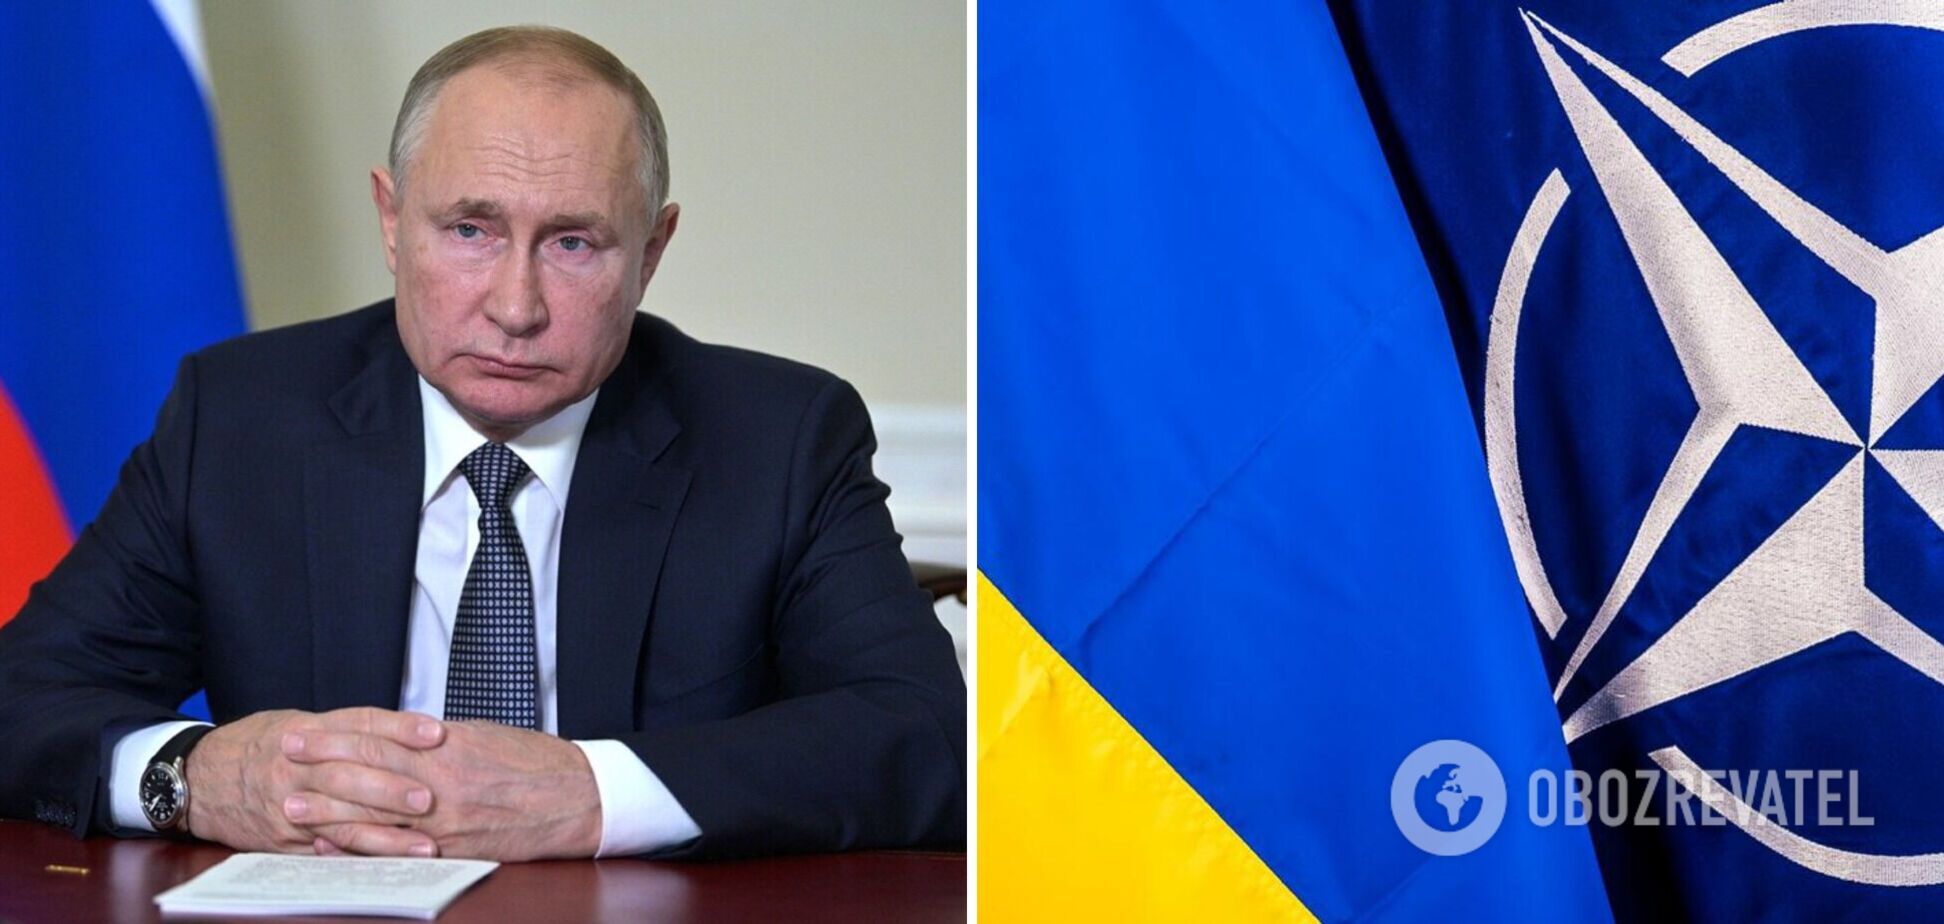 'Створює загрозу': Путін знову злякався вступу України в НАТО та розмріявся про 'гарантії безпеки' для РФ